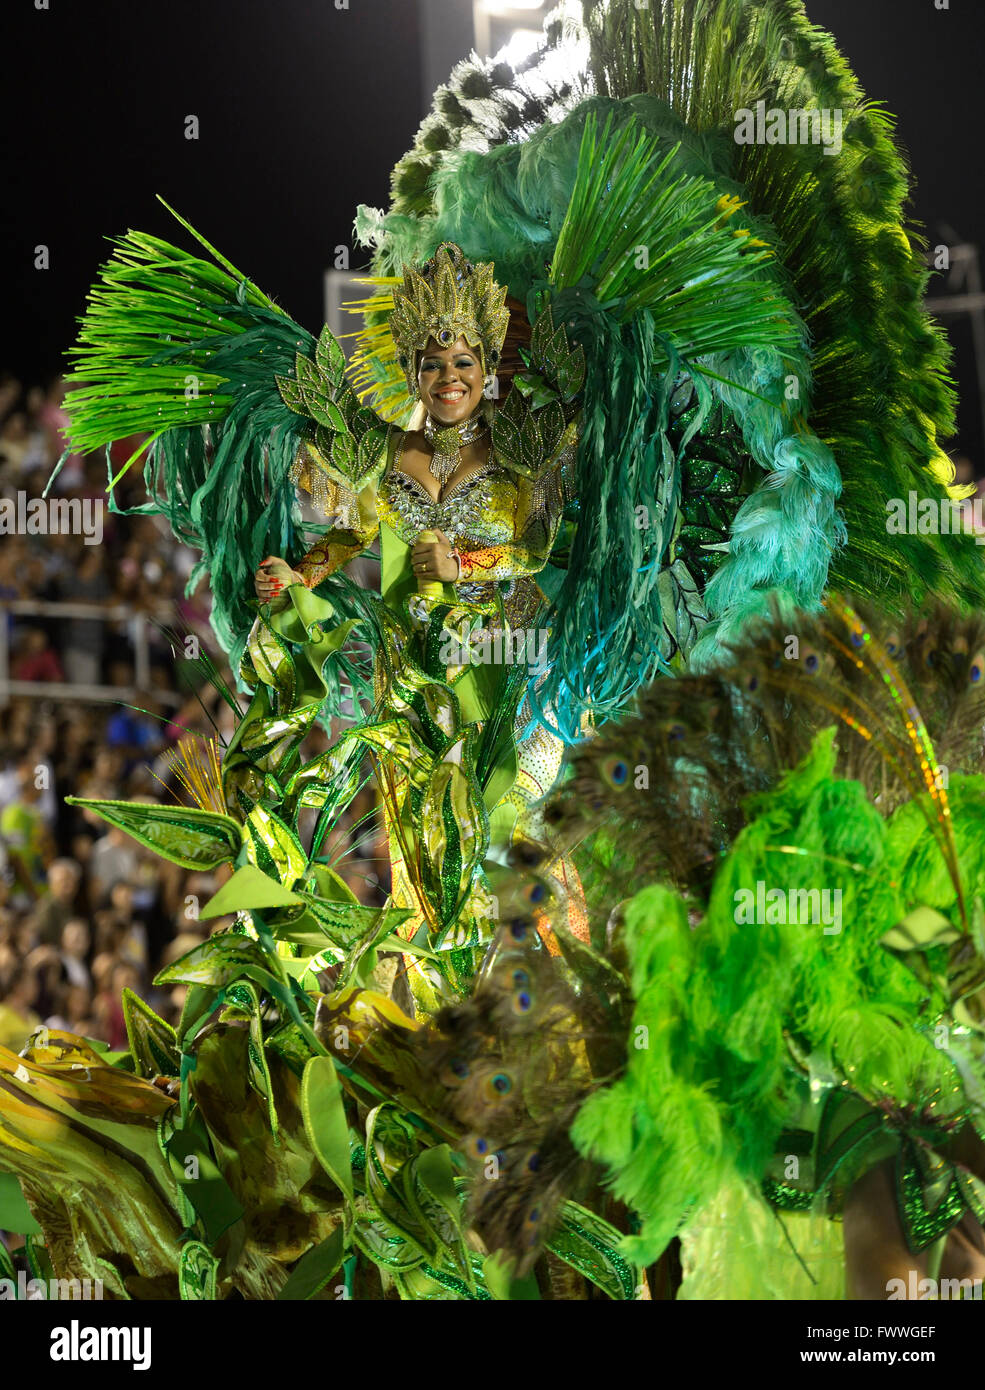 Danseuse de Samba sur un char allégorique, défilé de l'école de samba Imperatriz Leopoldinense, carnaval 2016 dans le Sambódromo Banque D'Images